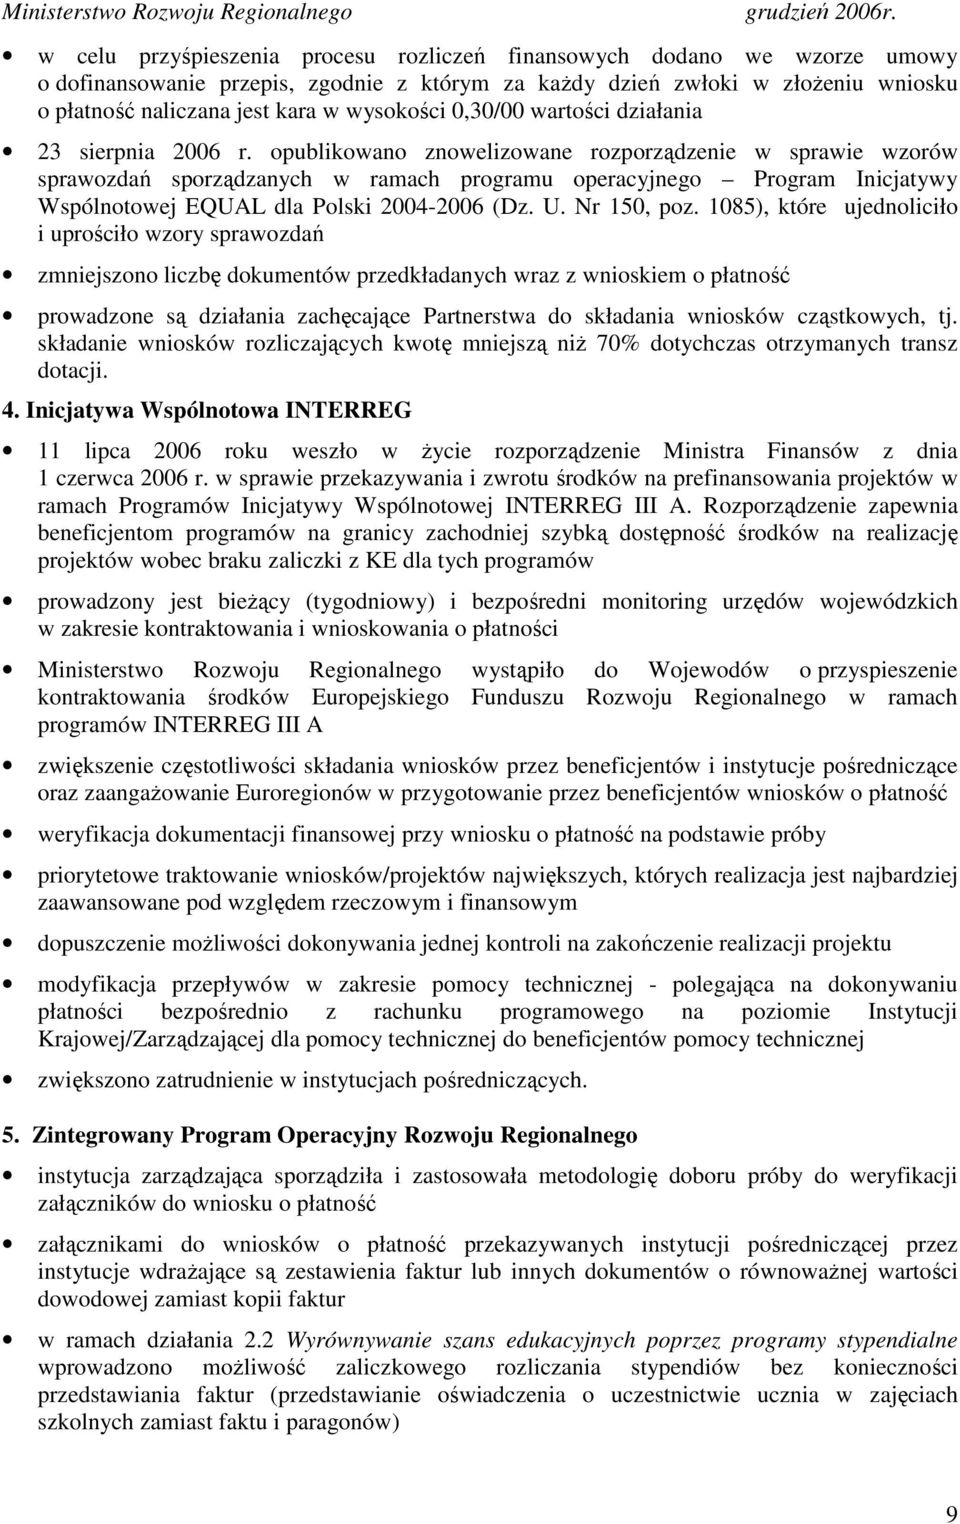 opublikowano znowelizowane rozporządzenie w sprawie wzorów sprawozdań sporządzanych w ramach programu operacyjnego Program Inicjatywy Wspólnotowej EQUAL dla Polski 2004-2006 (Dz. U. Nr 150, poz.